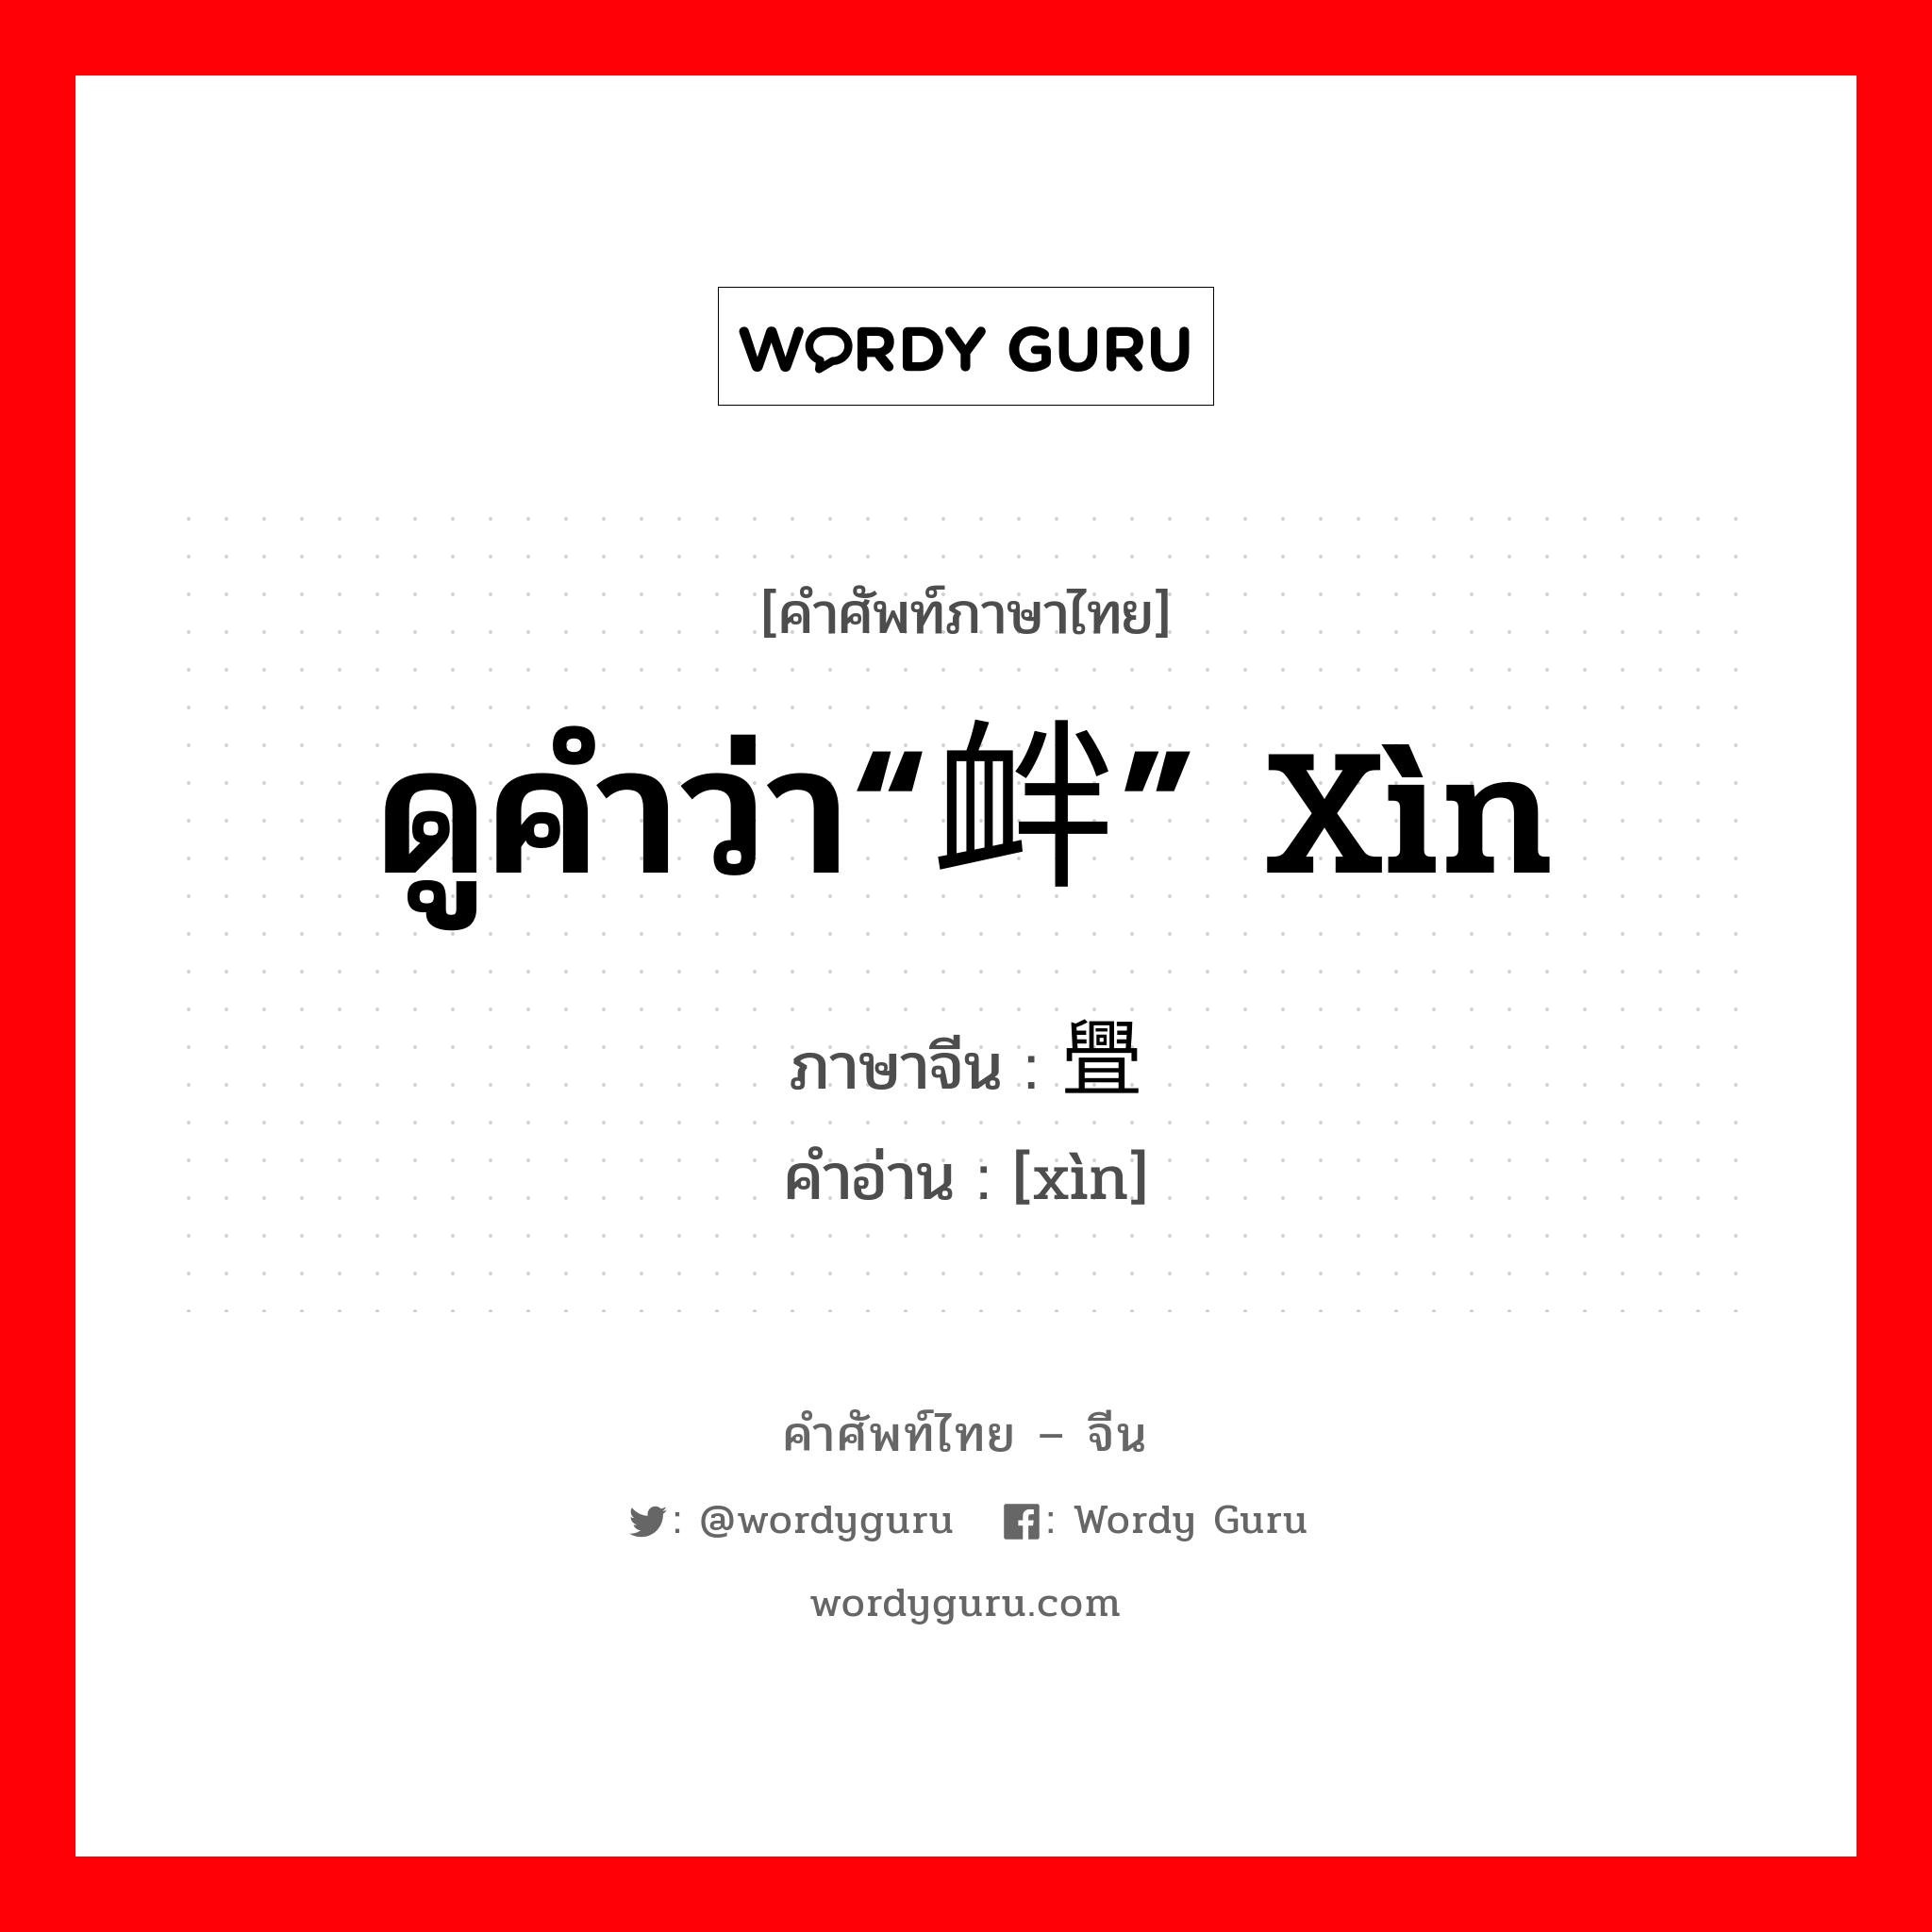 ดูคำว่า“衅” xìn ภาษาจีนคืออะไร, คำศัพท์ภาษาไทย - จีน ดูคำว่า“衅” xìn ภาษาจีน 舋 คำอ่าน [xìn]